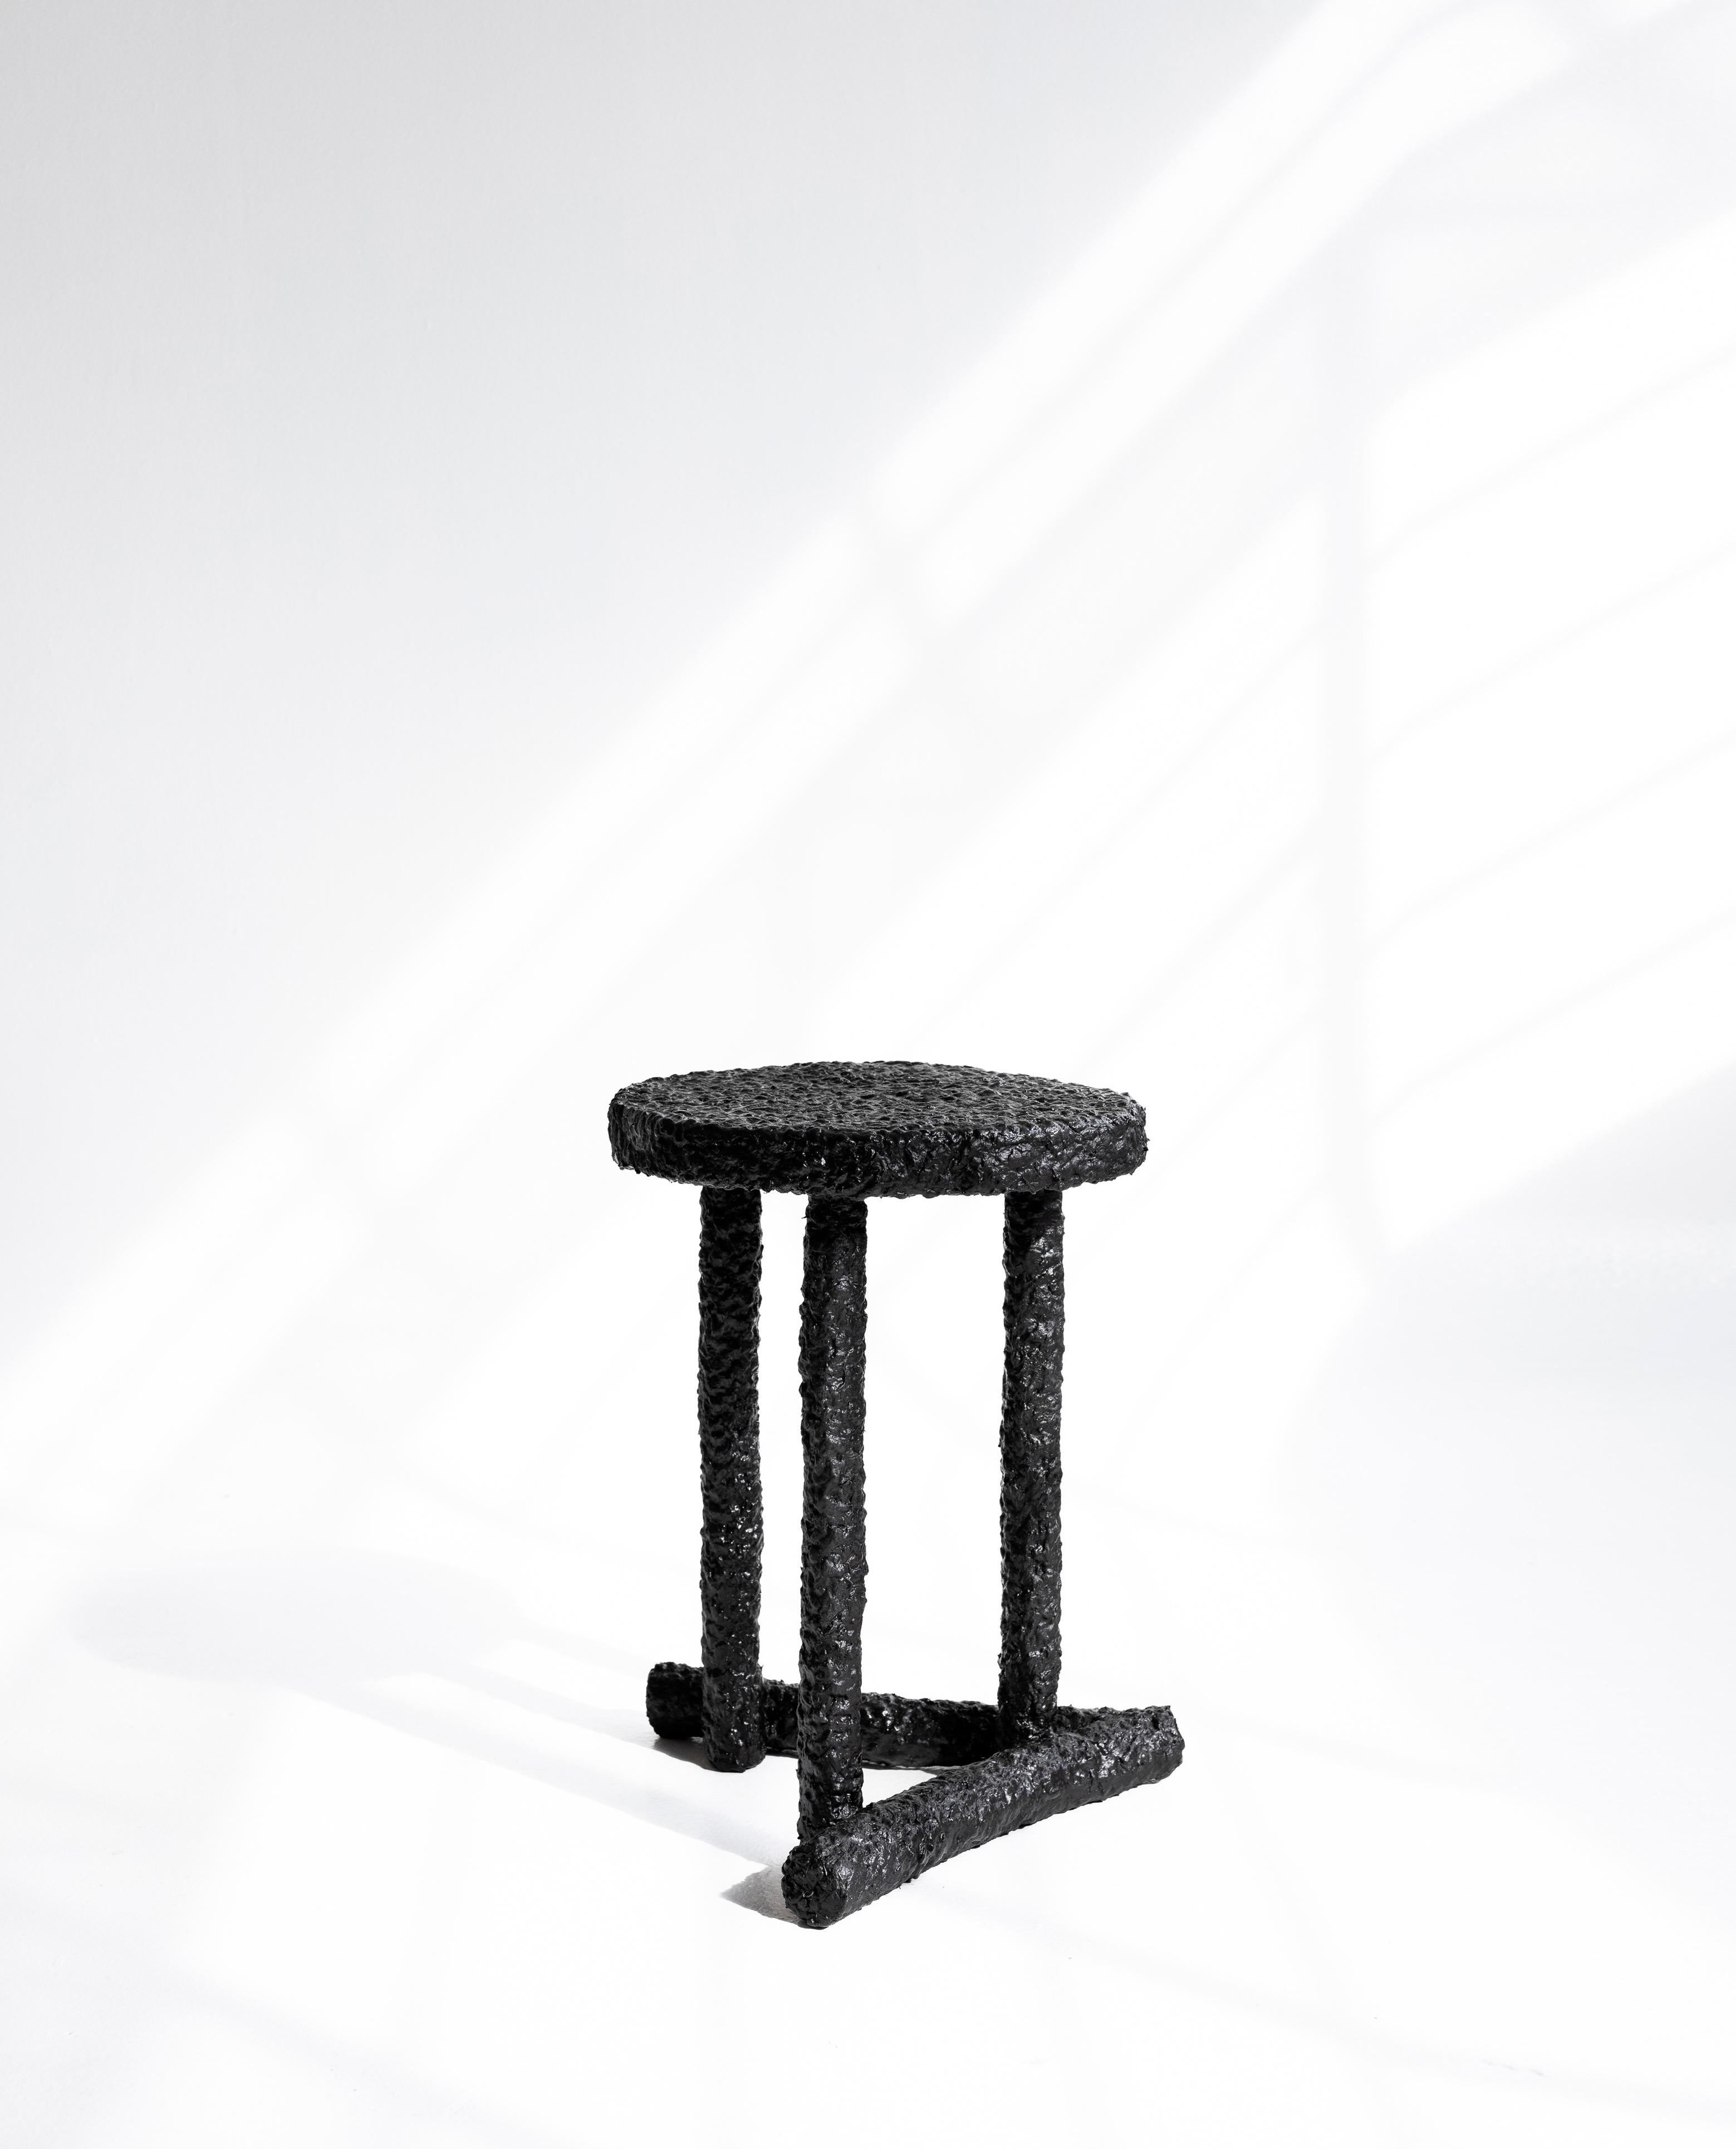 #1 TABLE D'APPOINT CALOR
Structure en baguettes de caféier, fibre de fique, charbon de bois
41x35x43 cm
Pièce unique